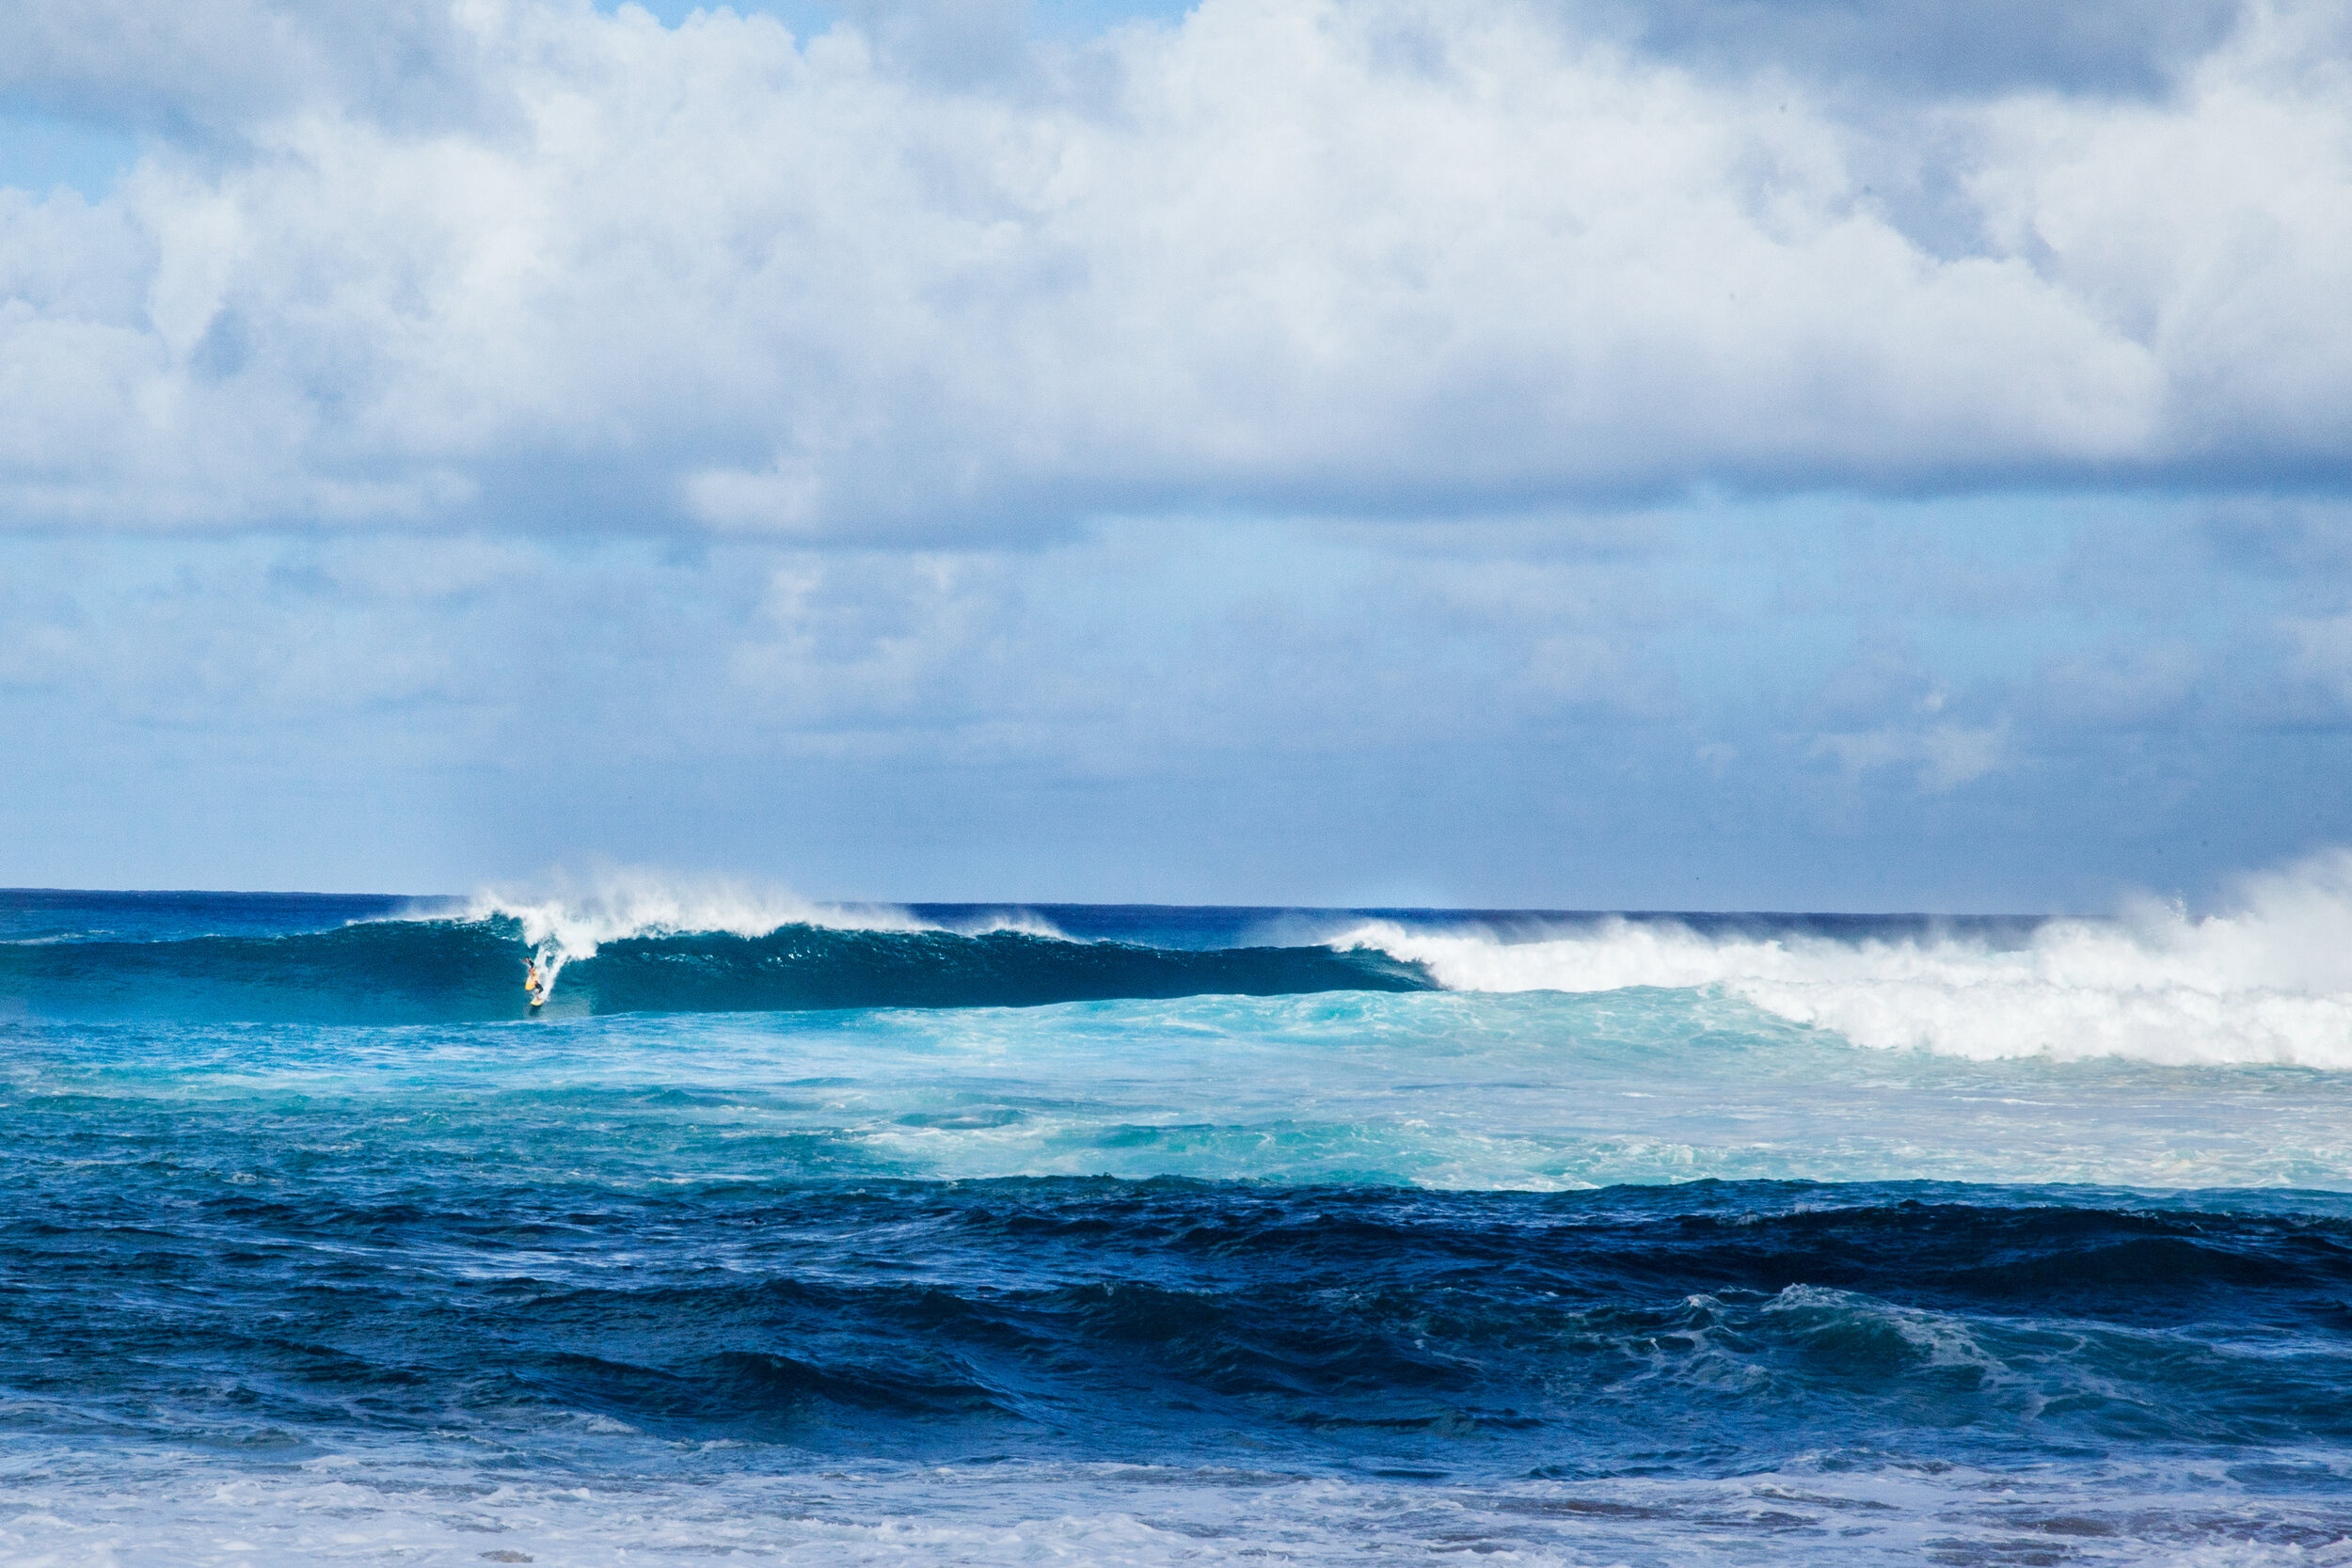 Waimea, Oahu, HI - Surfcare Surfboard Protection Plans